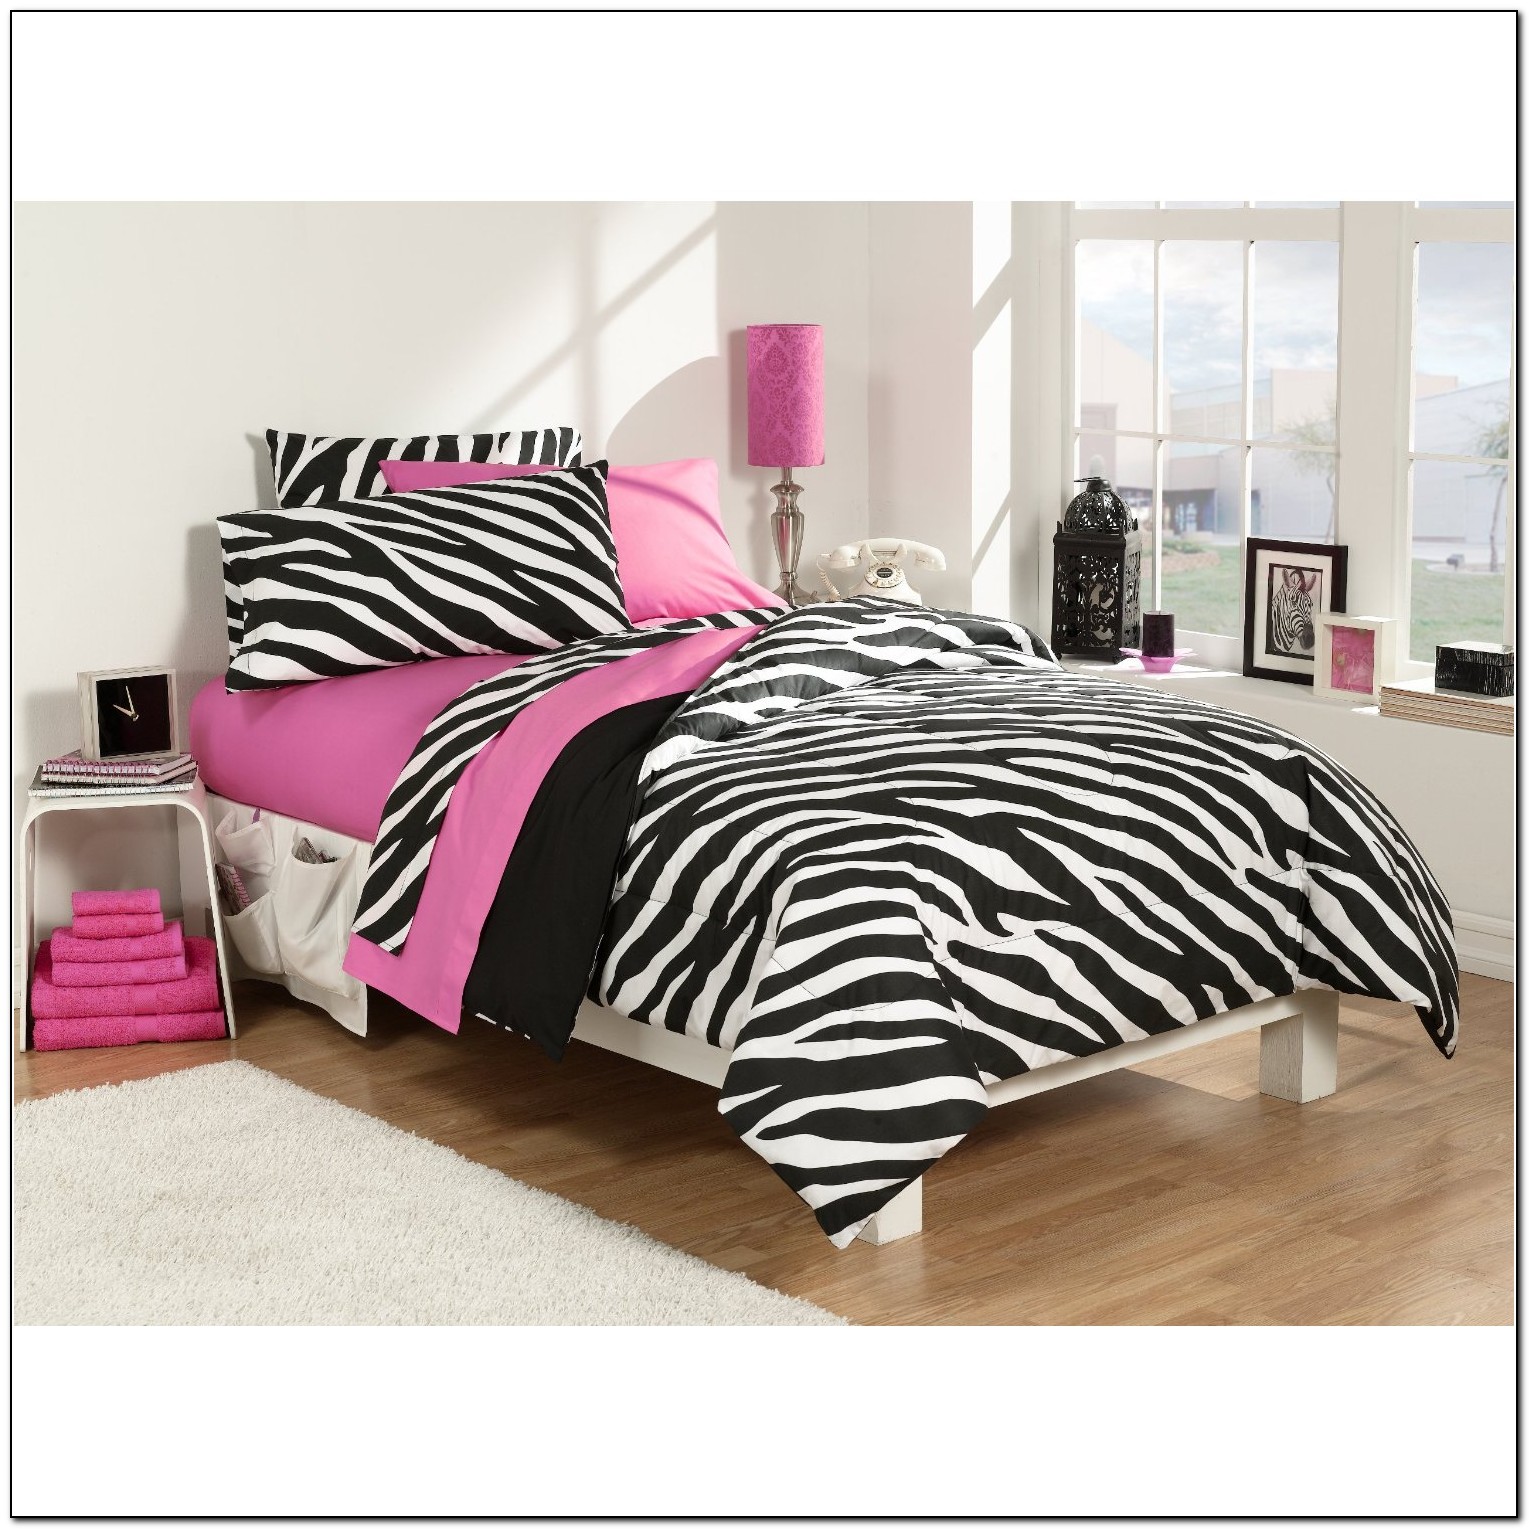 Dorm Bedding For Girls